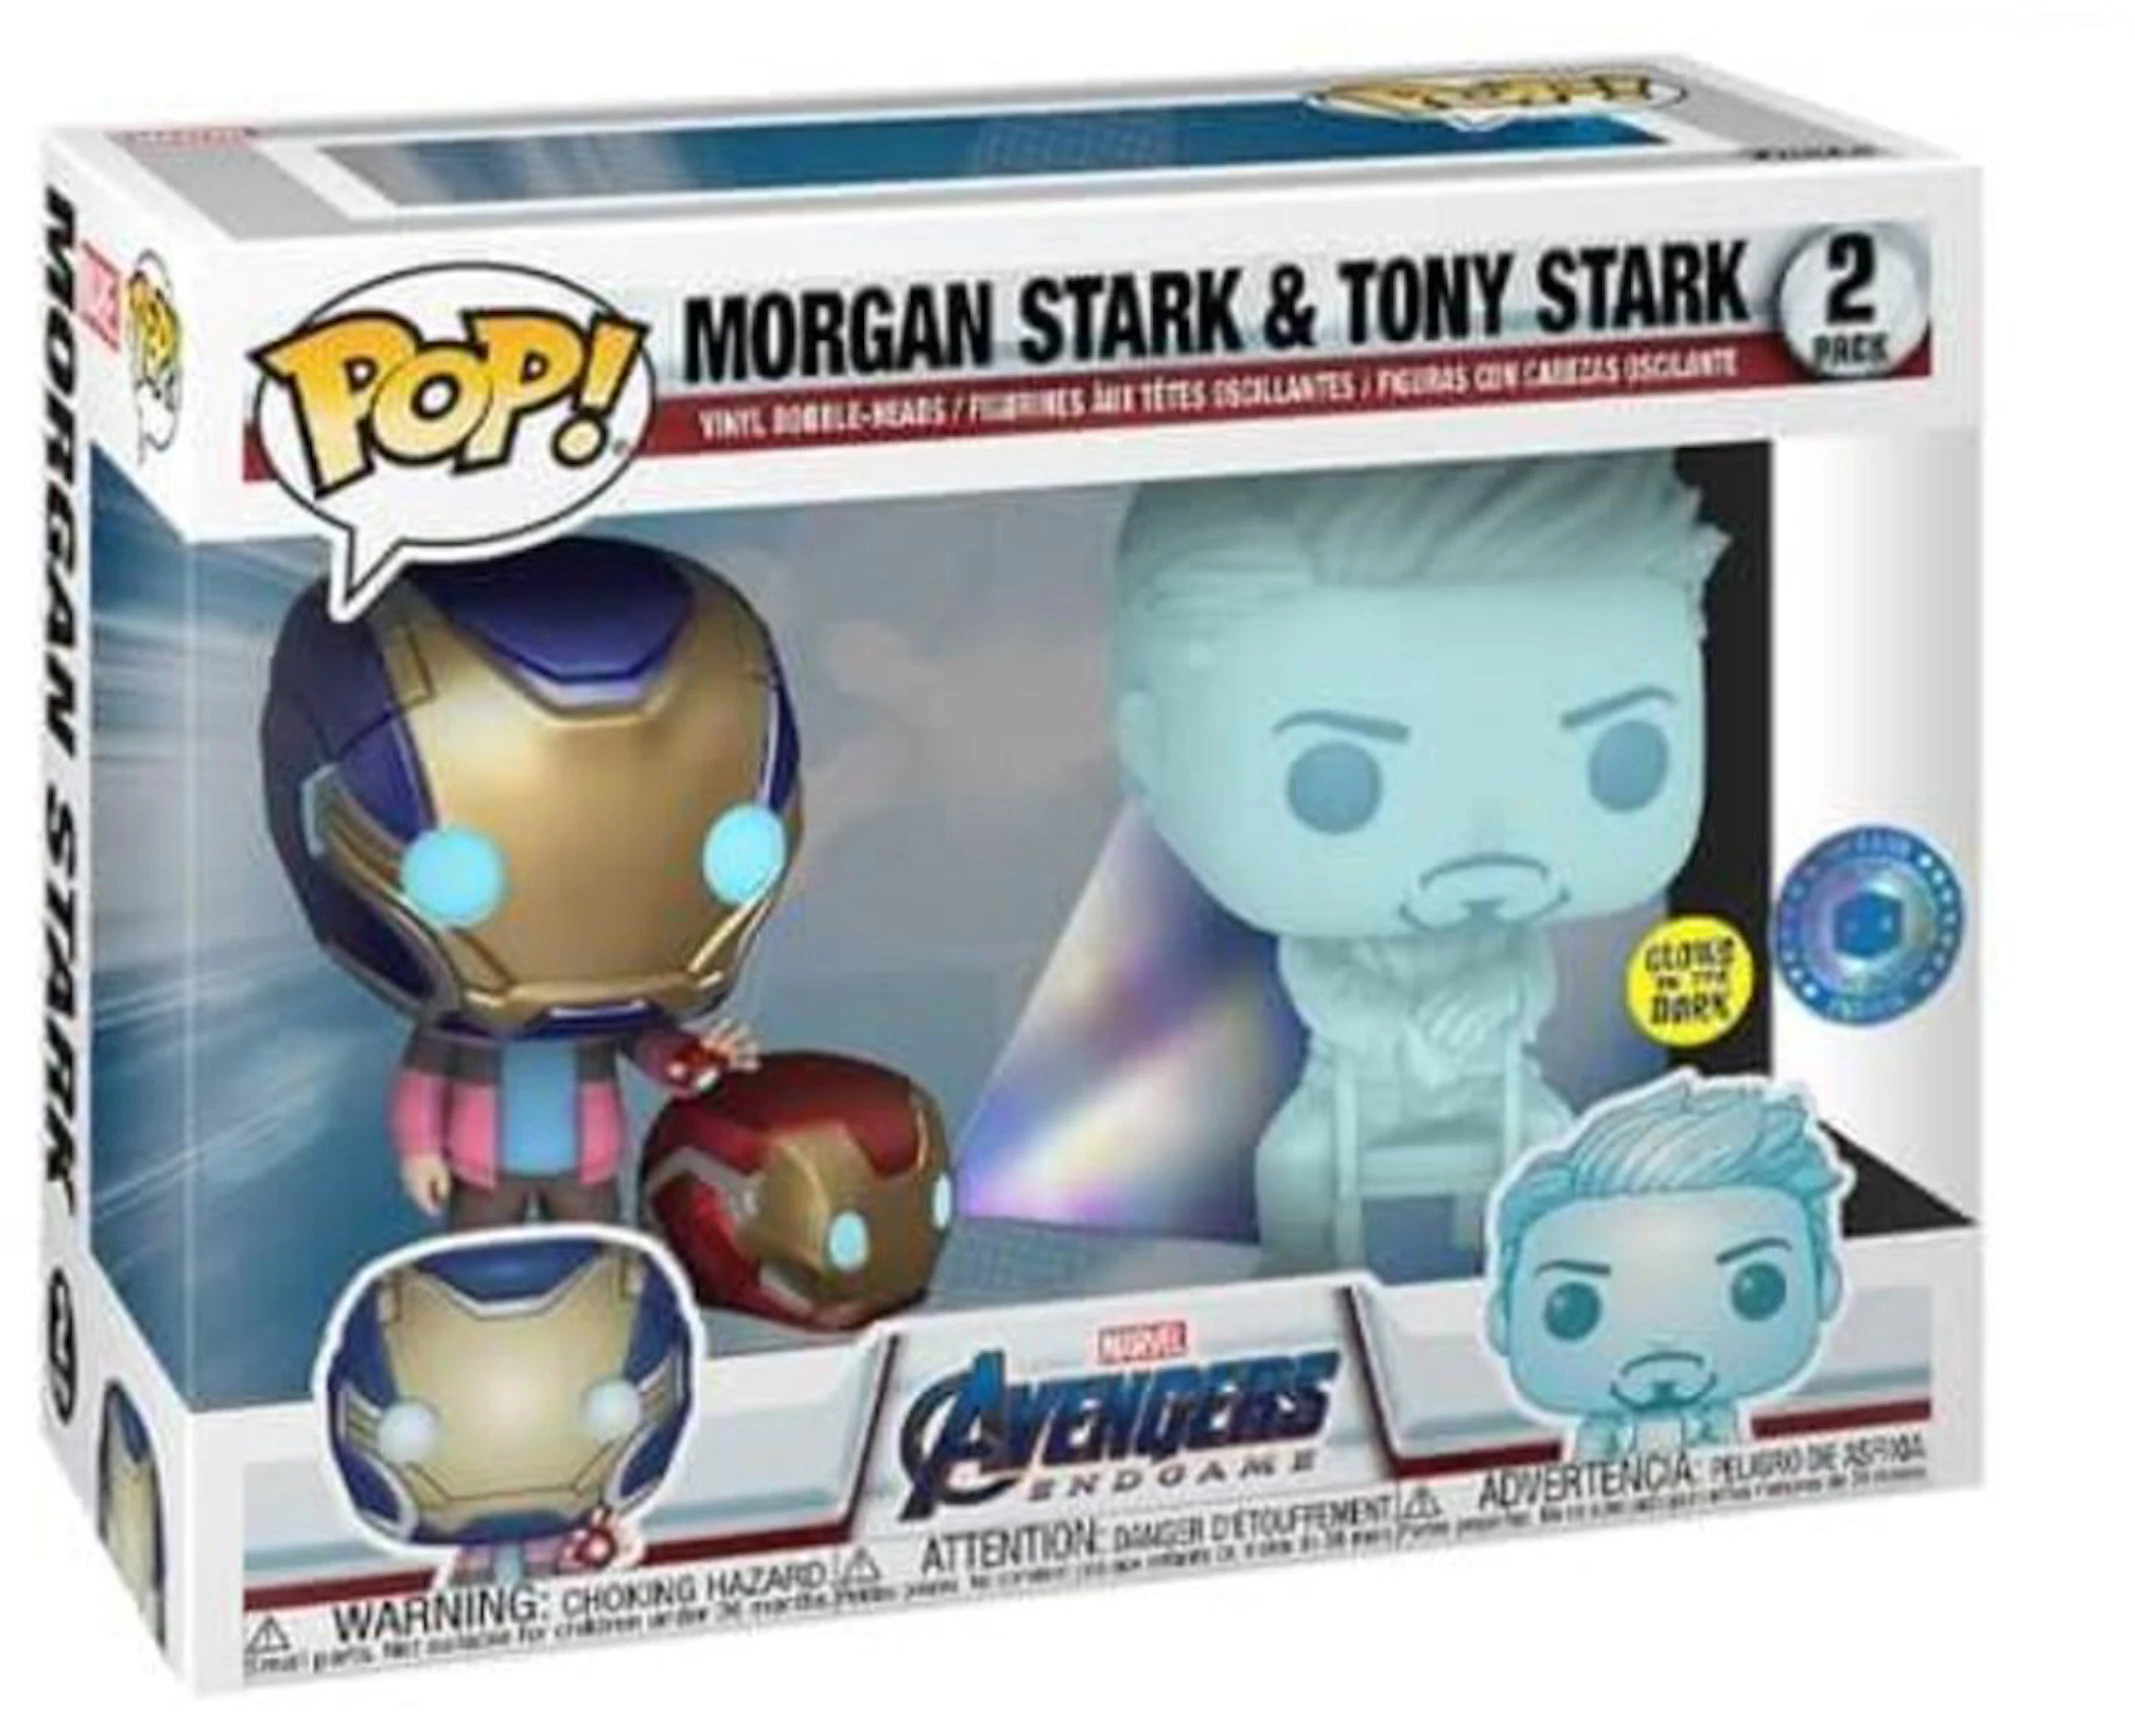 warmte Accumulatie moederlijk Funko Pop! Marvel Avengers Endgame Morgan Stark and Tony Stark Pop In A Box  Exclusive (Glow) 2-Pack - US